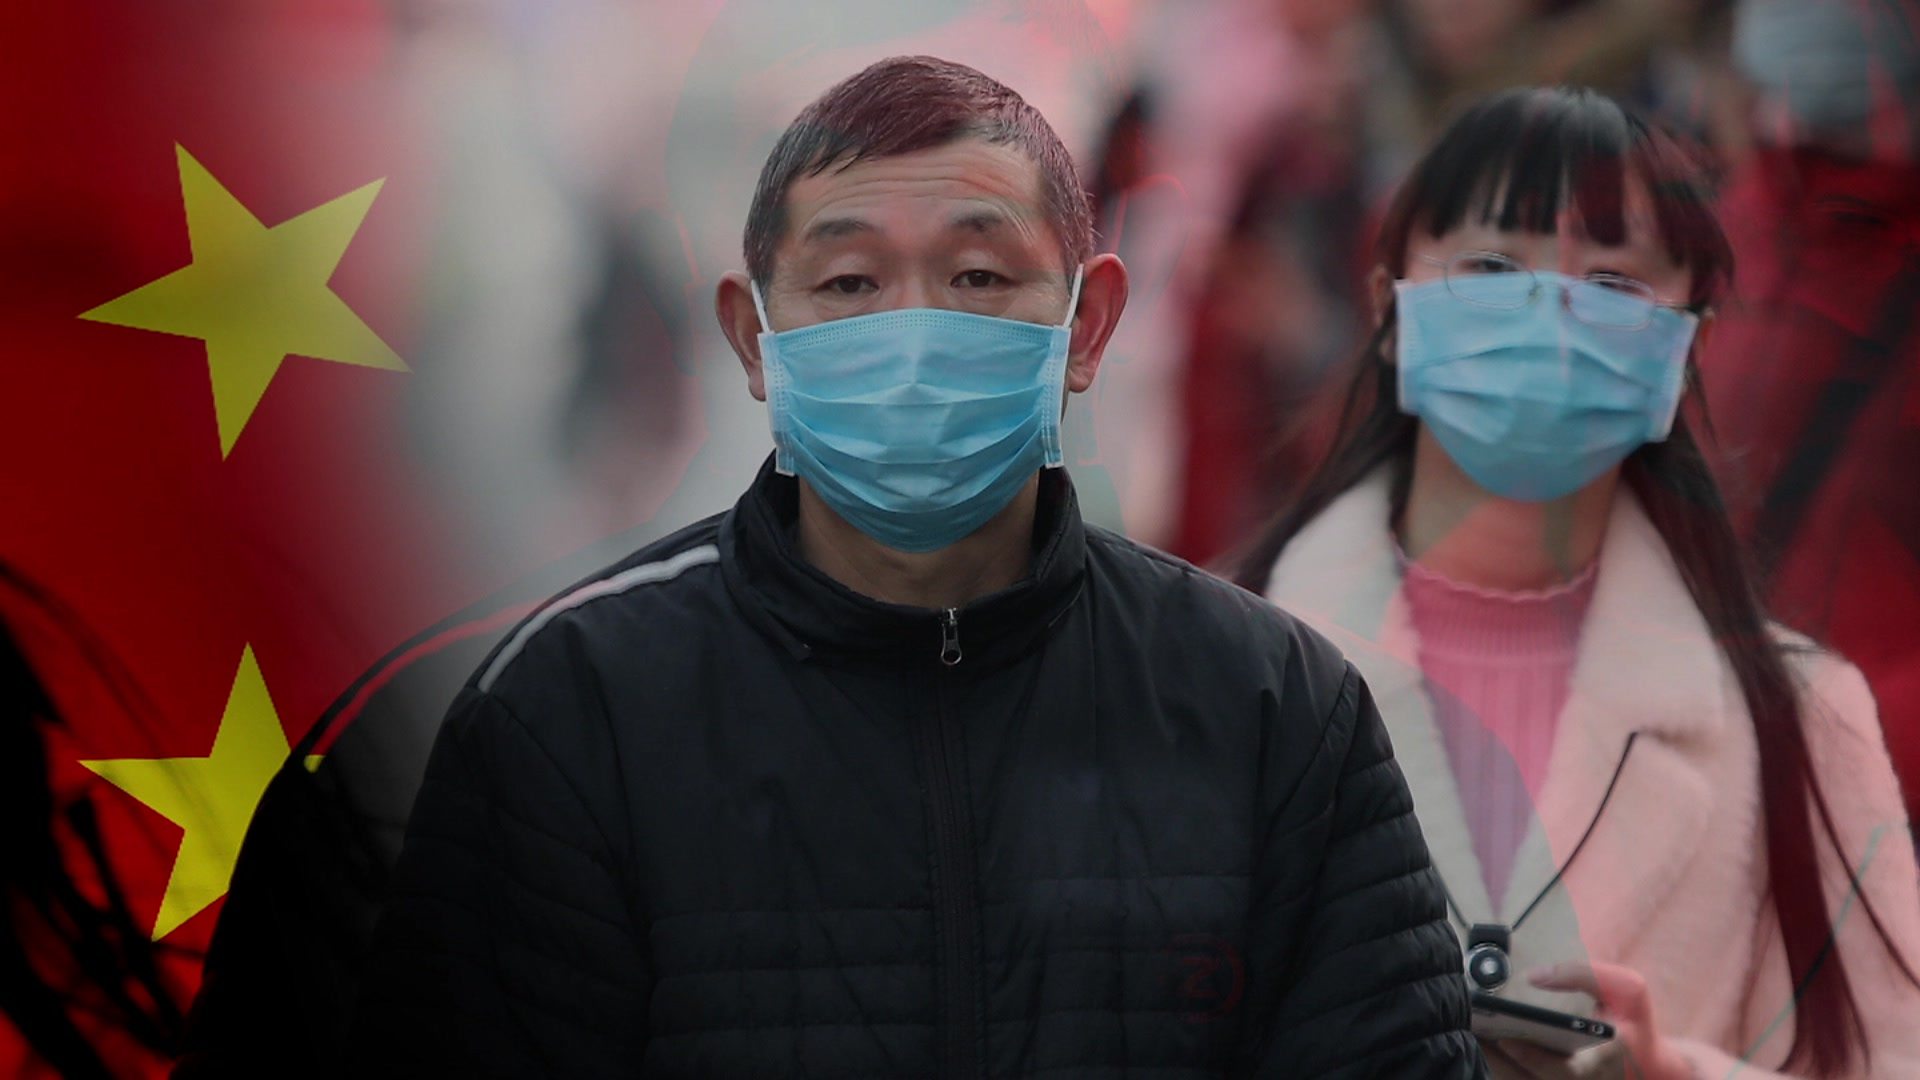 Новый вирус в японии. Китайцы в масках. Человек в медицинской маске.